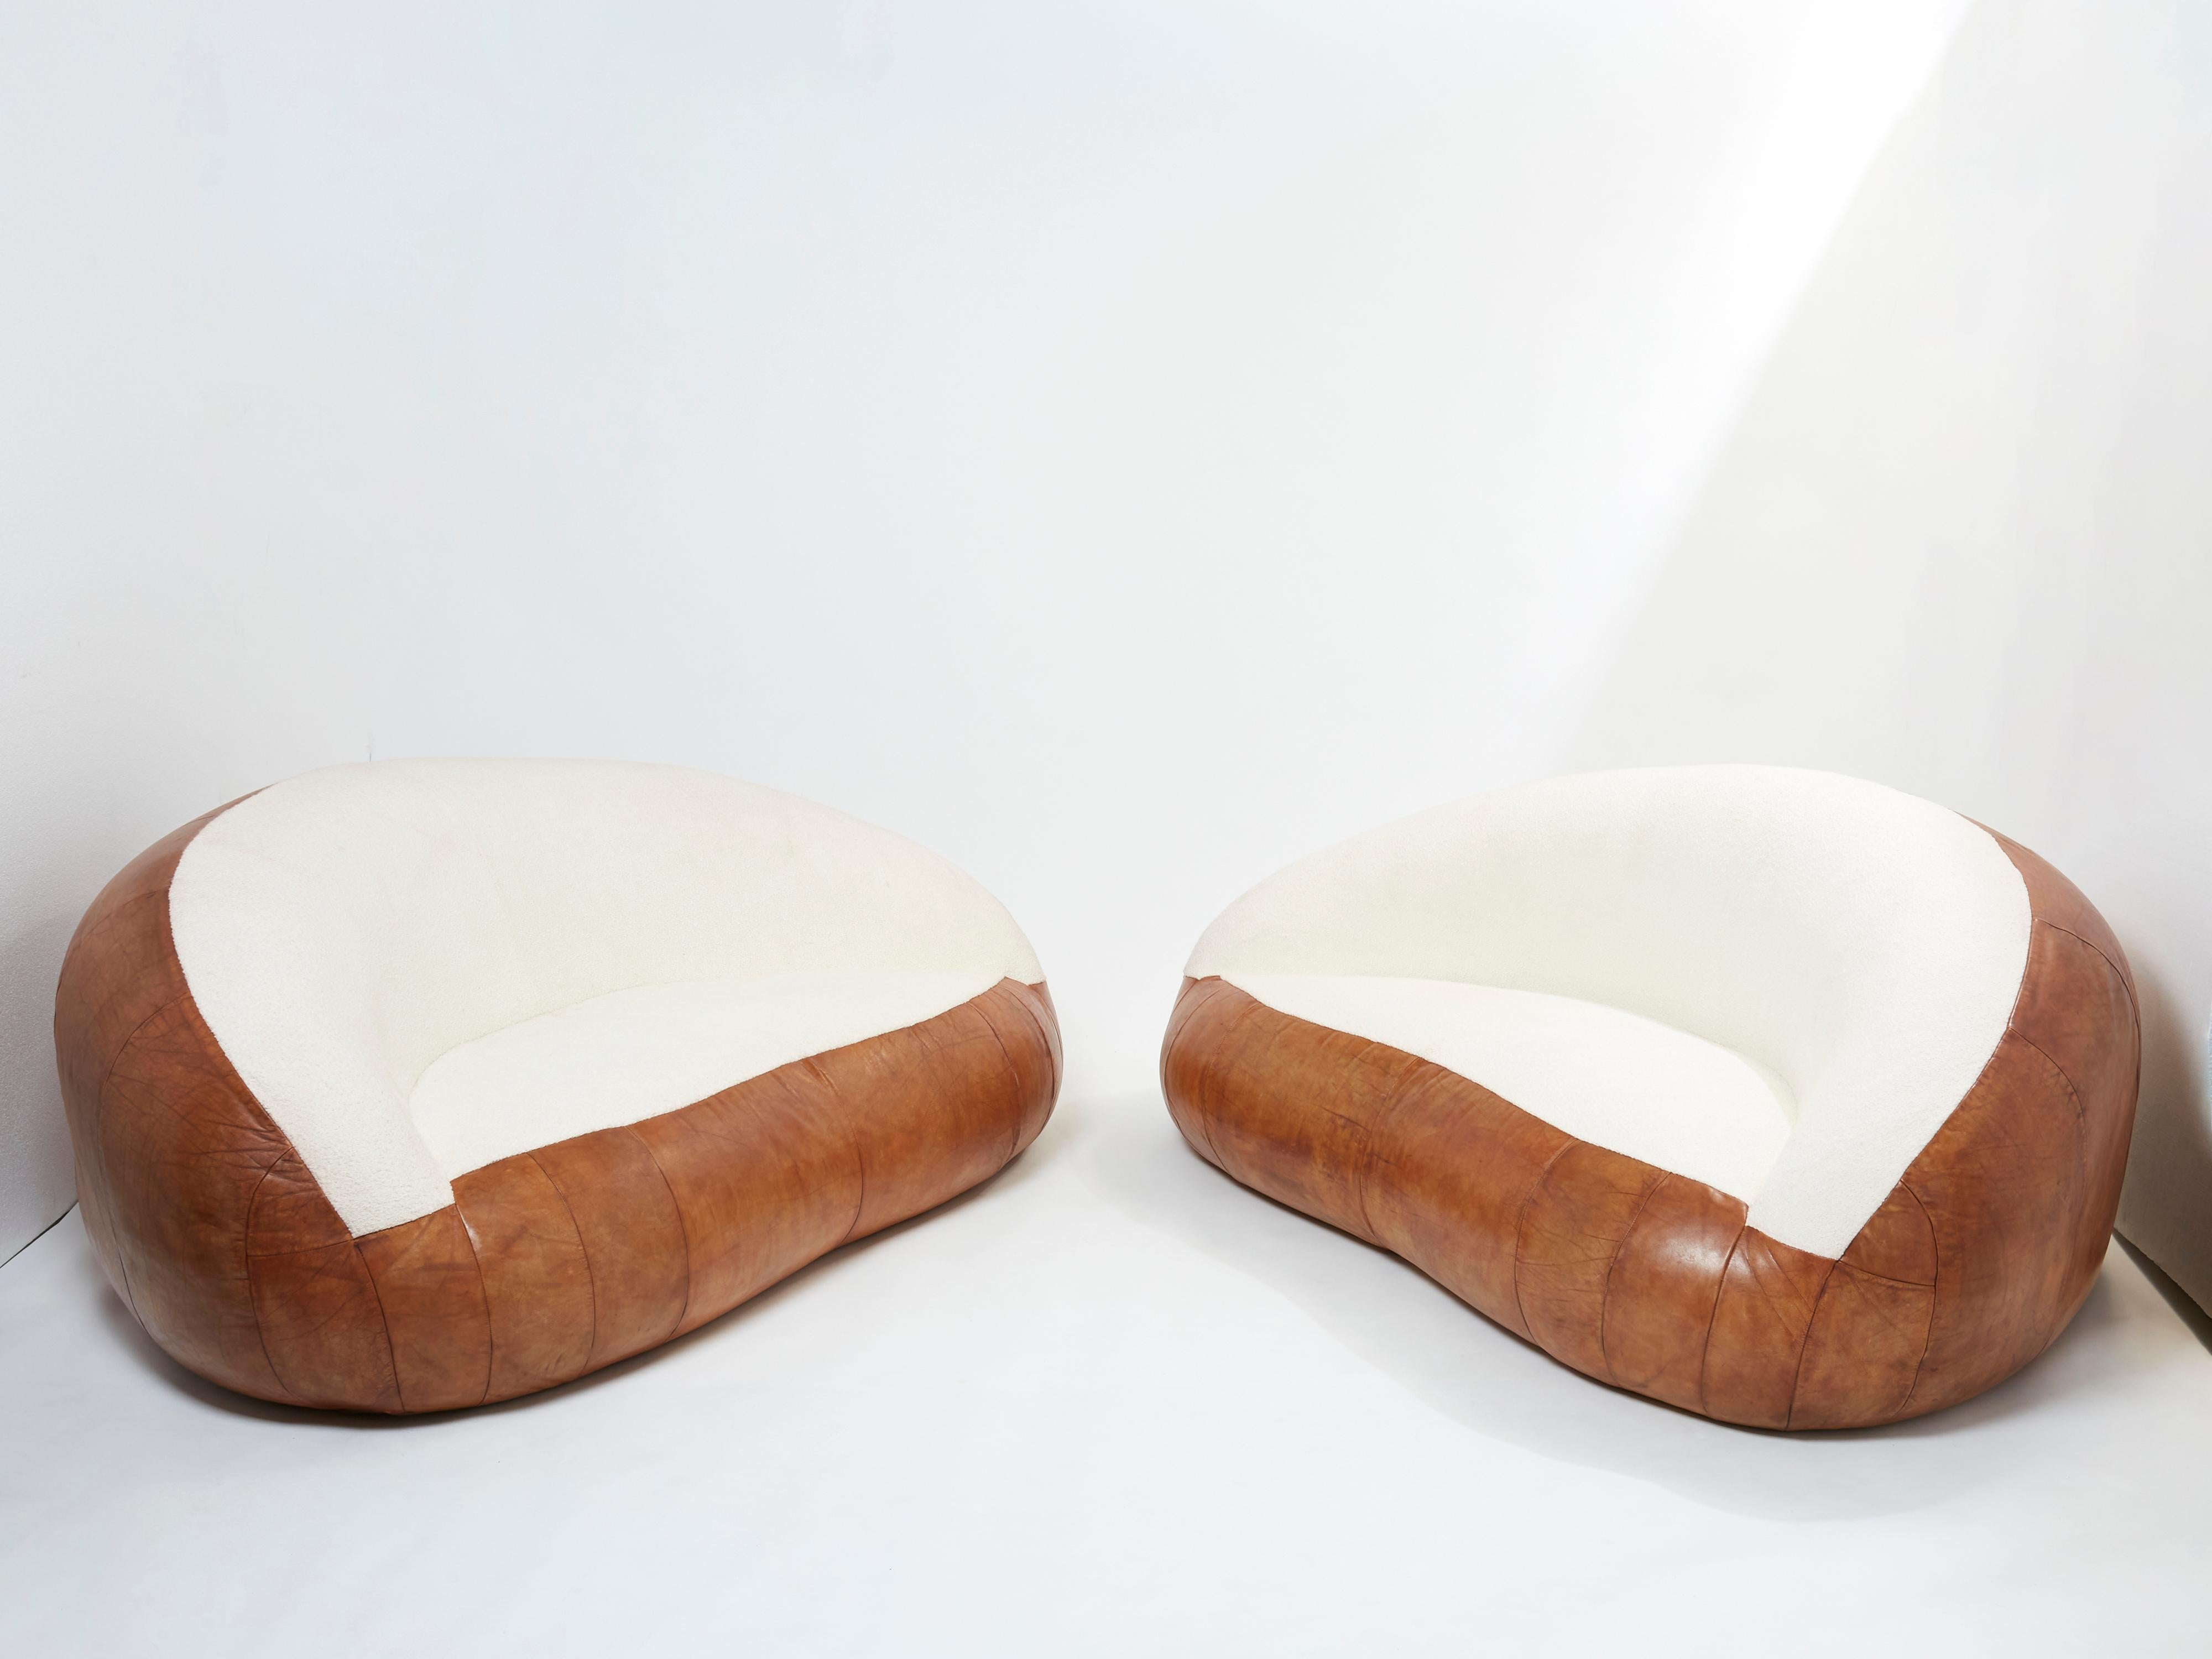 Rare ensemble de deux petits canapés croissants de Raphaël Raffel pour Maison Honoré Paris, réalisés au milieu des années 1970. Les canapés ont été entièrement restaurés, en conservant le cuir cognac d'origine, et l'assise et le dossier ont été